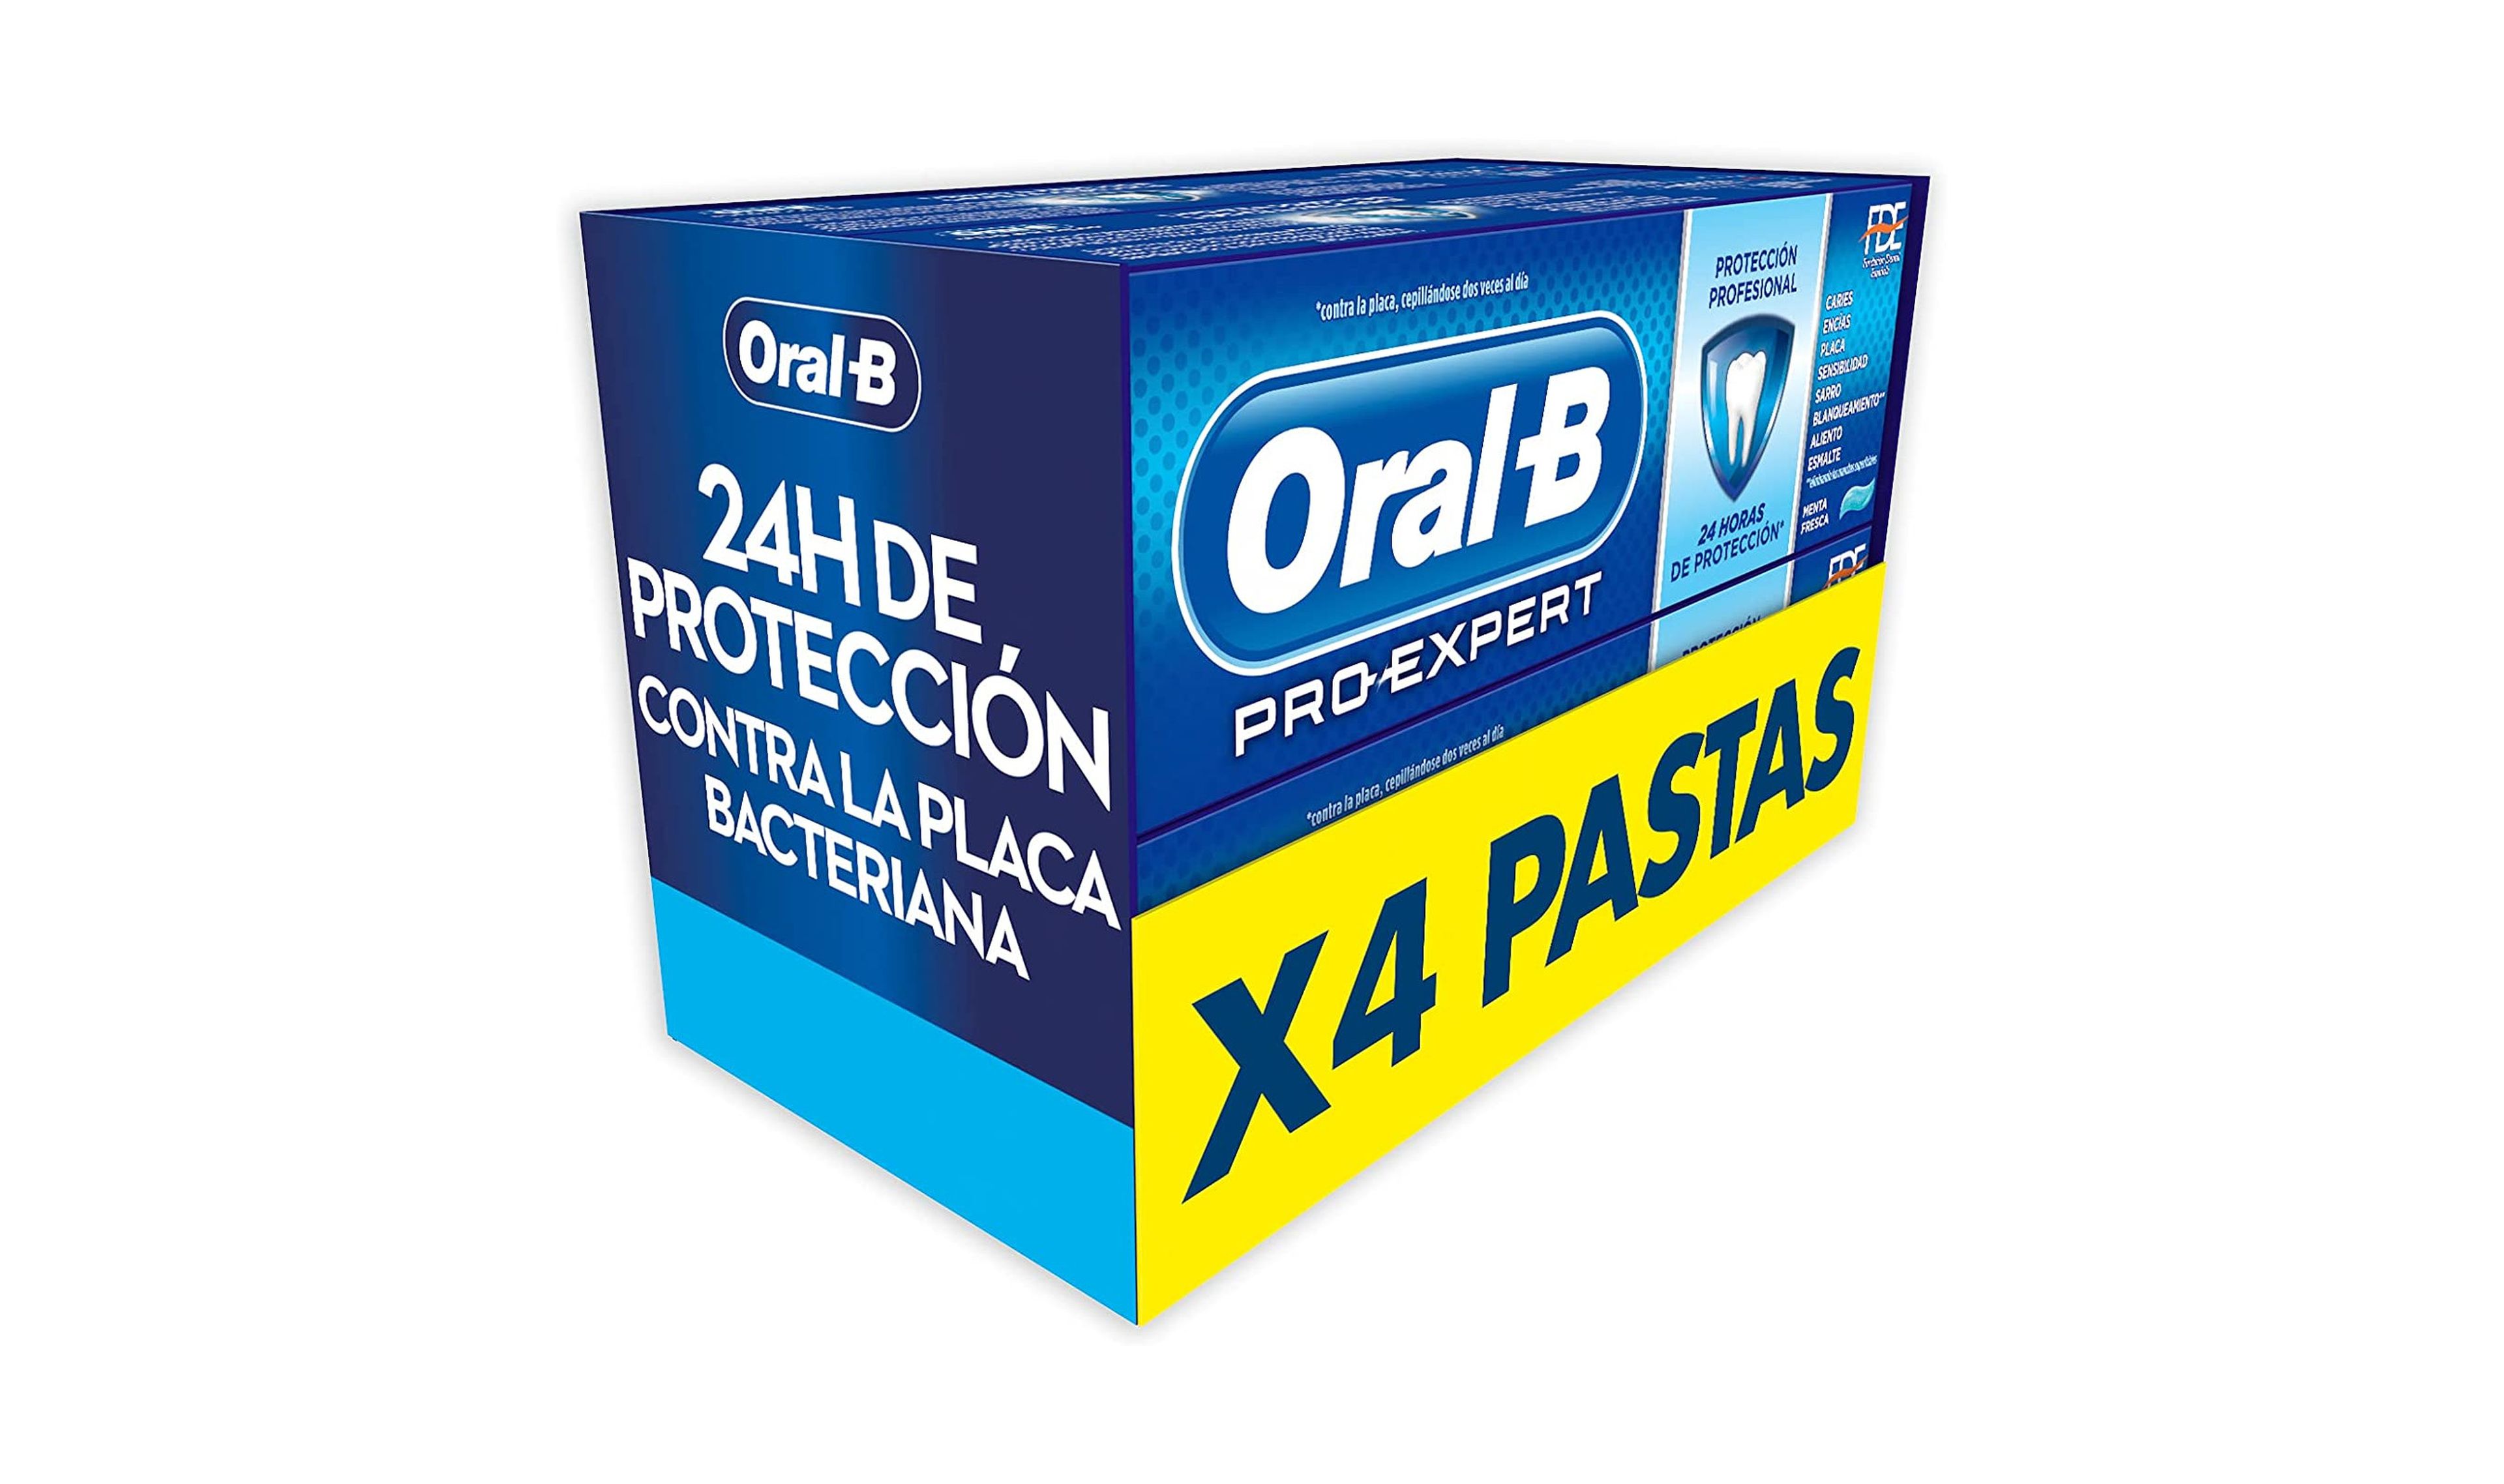 Oral-B pasta de dientes